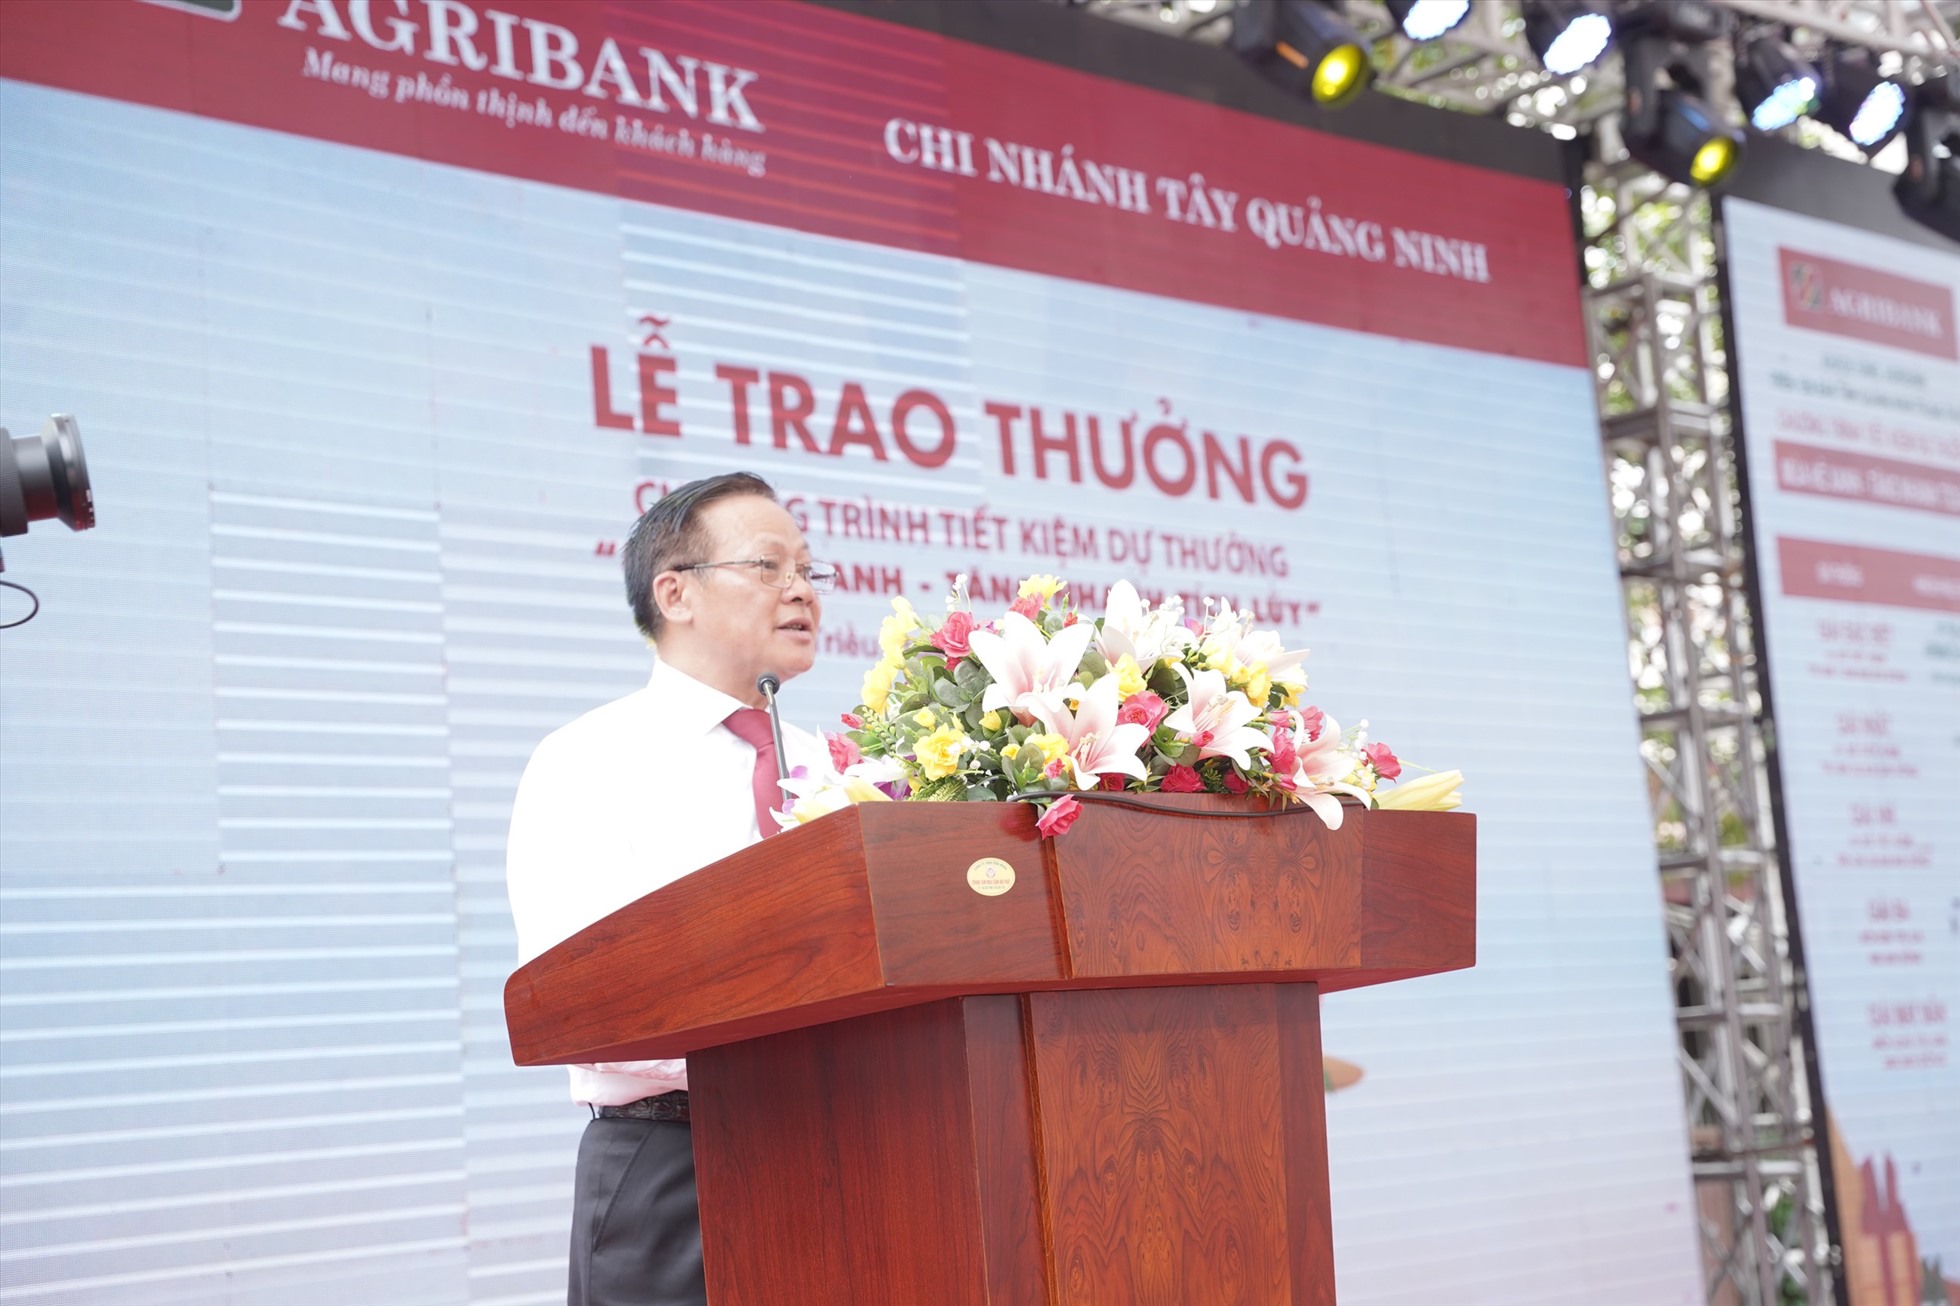 Phó Tổng Giám đốc Agribank Nguyễn Quang Hùng phát biểu tại buổi lễ trao thưởng